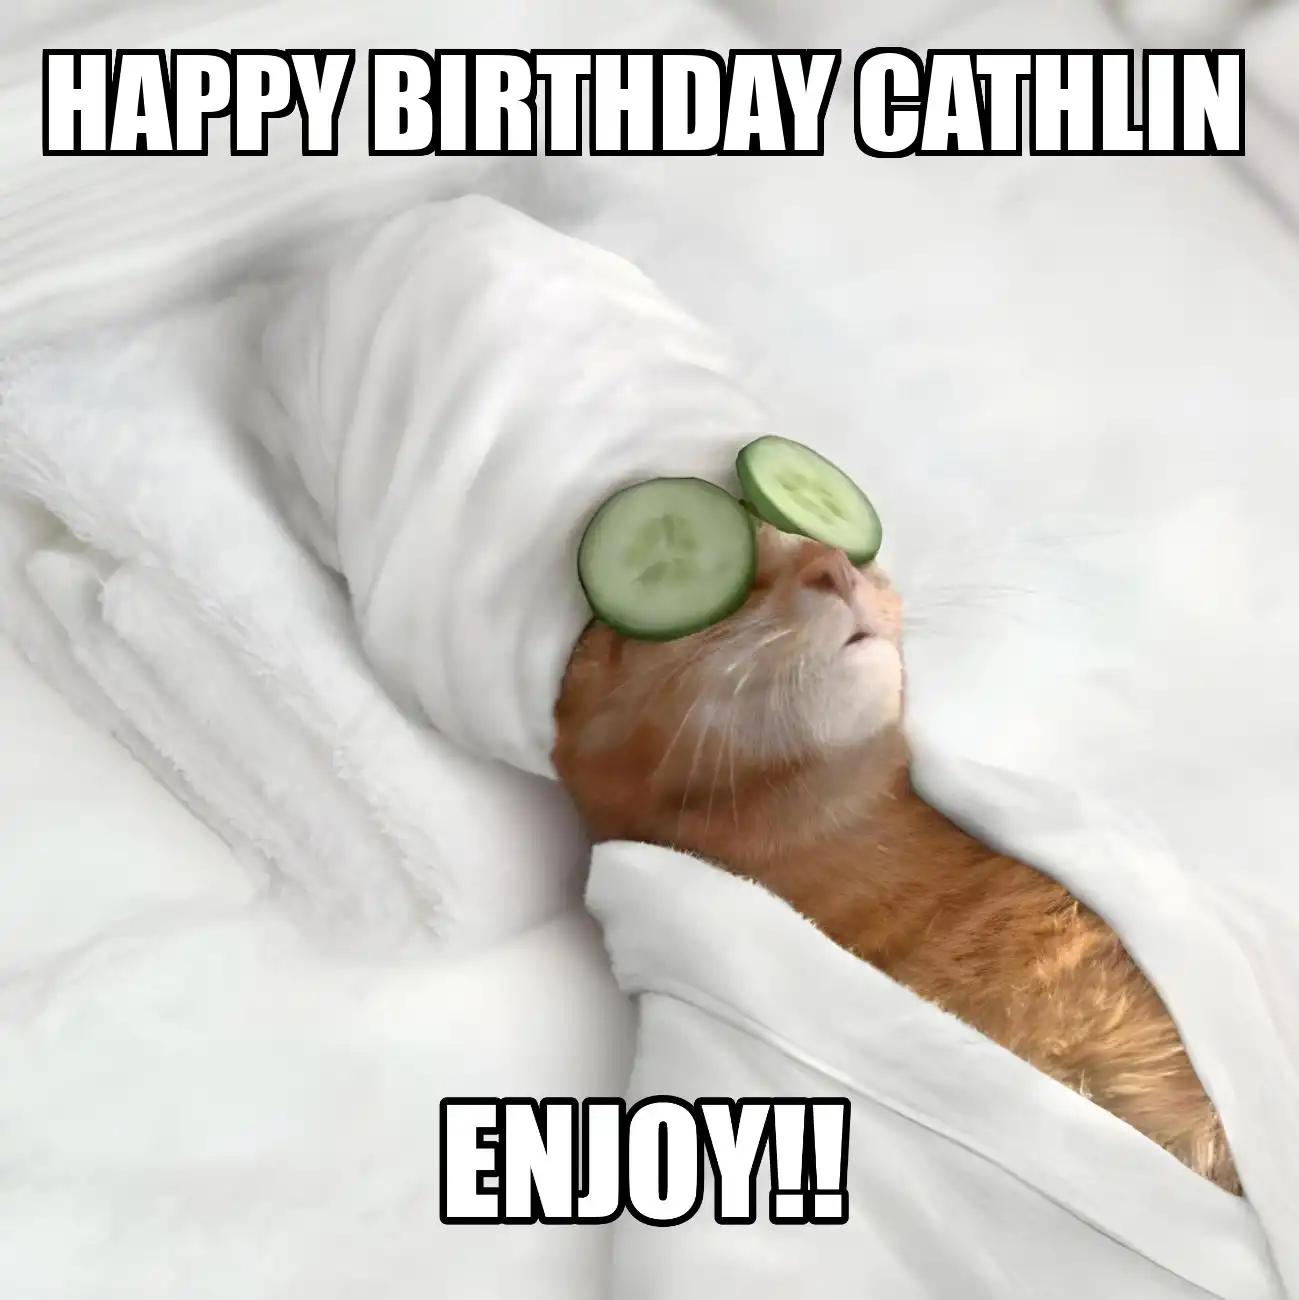 Happy Birthday Cathlin Enjoy Cat Meme